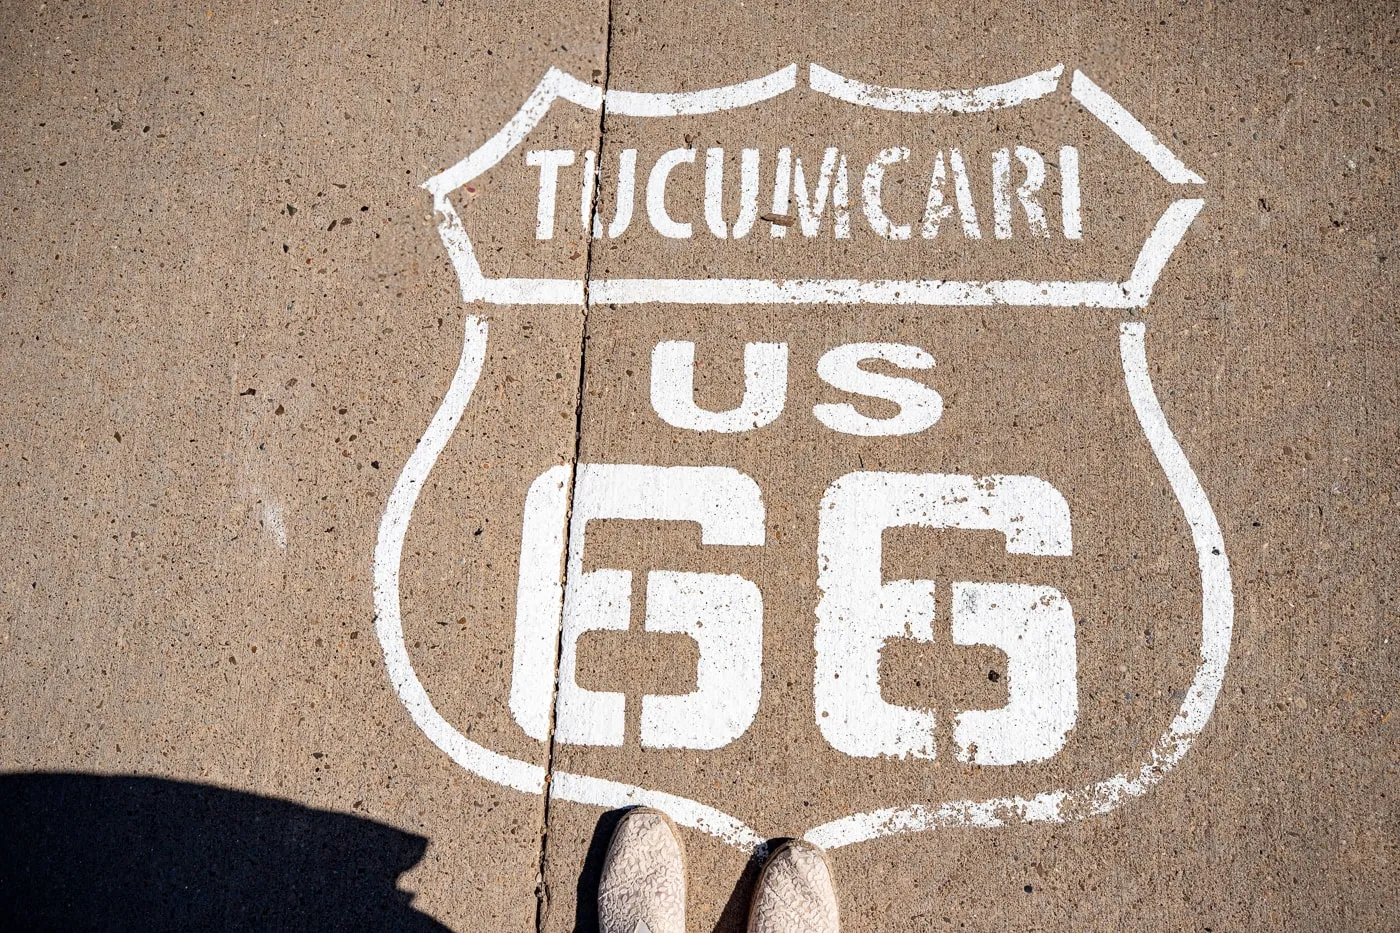 Tucumcari Route 66 shield on sidewalk at Motel Safari in Tucumcari, New Mexico (Route 66 Motel)